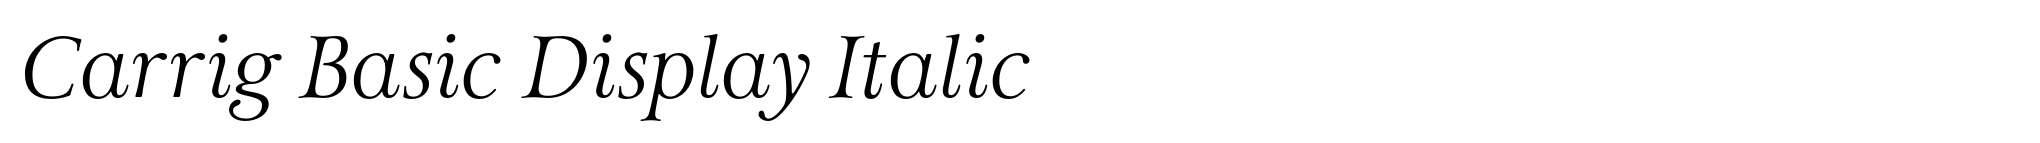 Carrig Basic Display Italic image